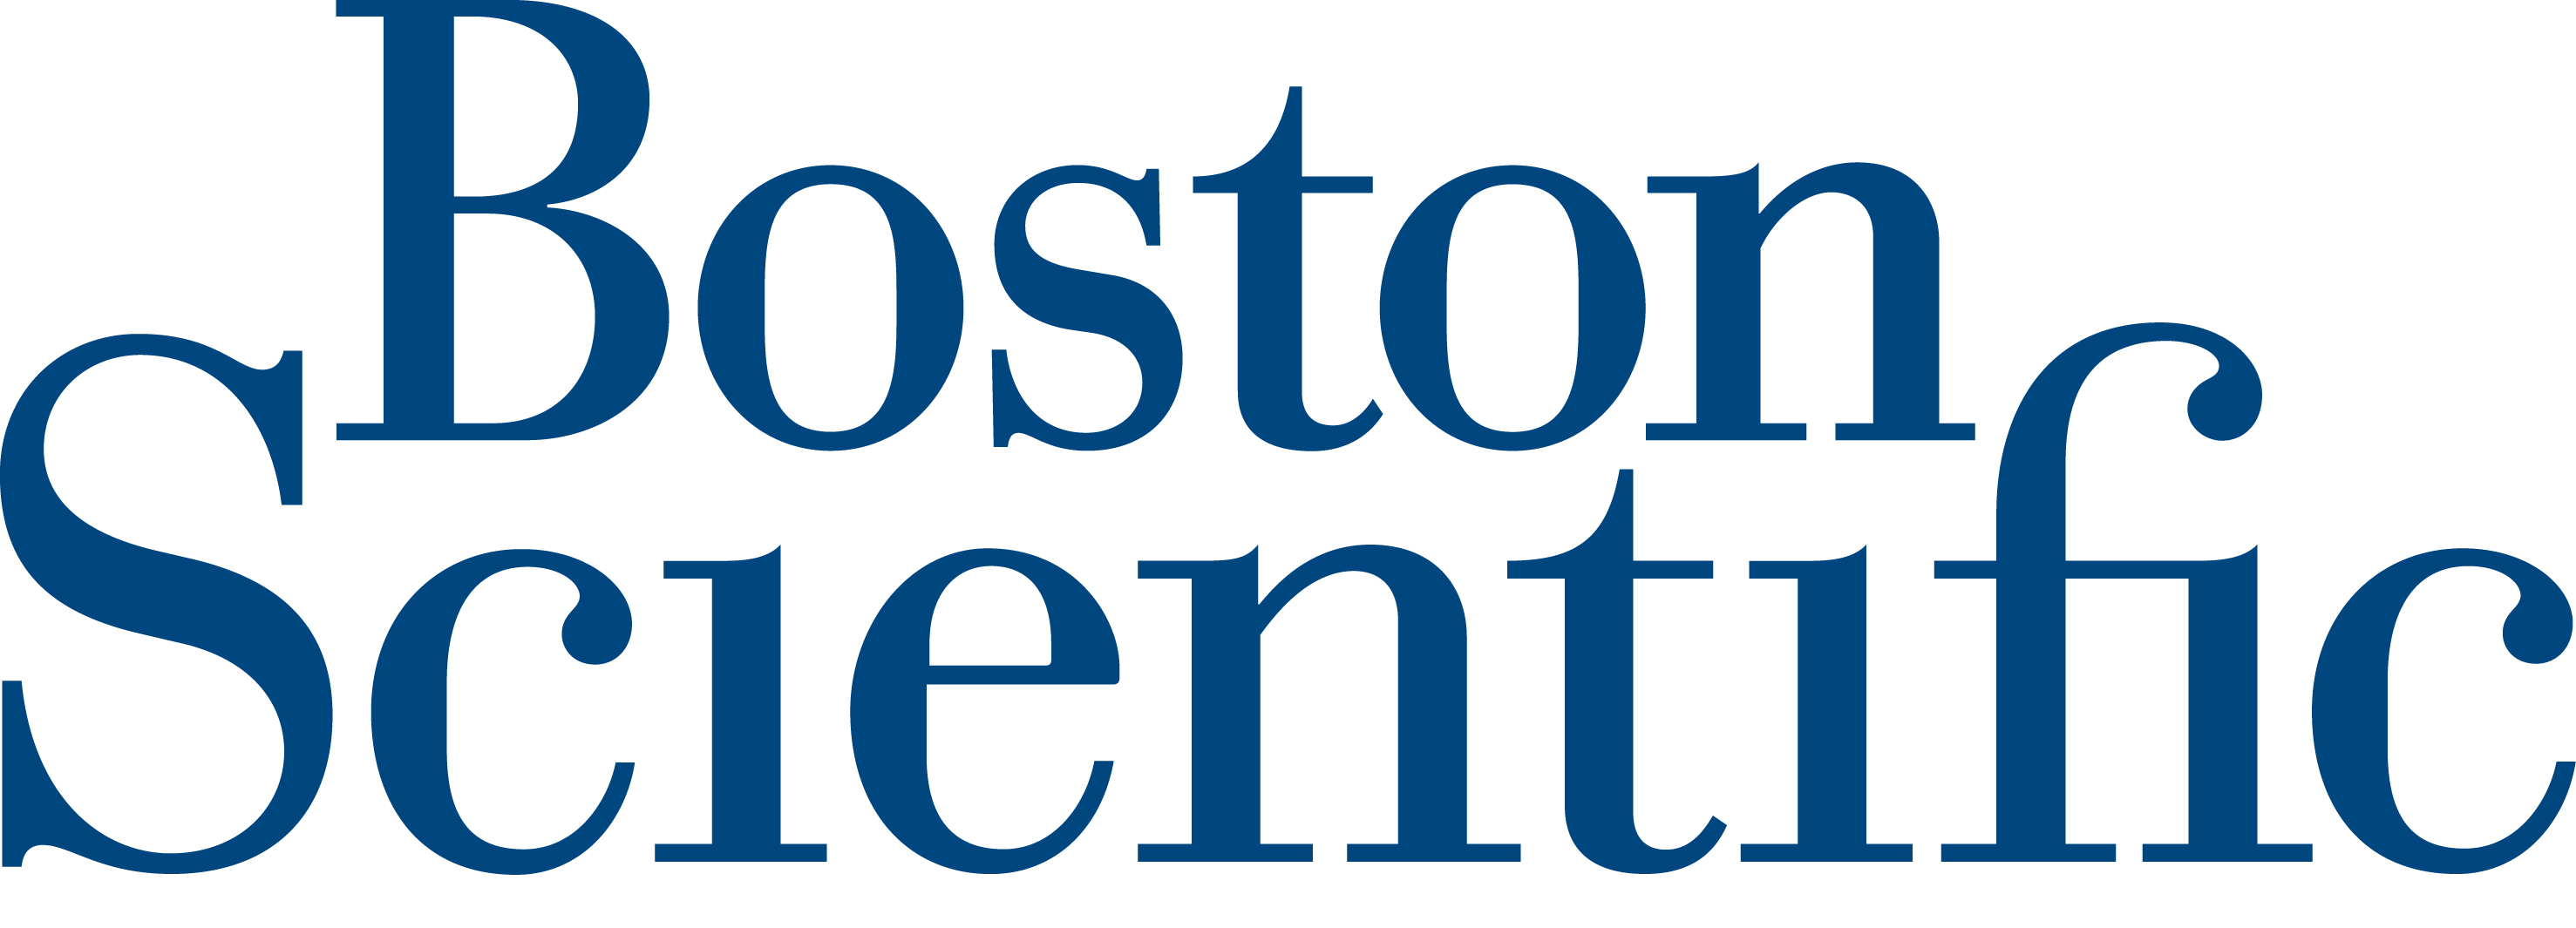 Boston Scientific Corporation, India